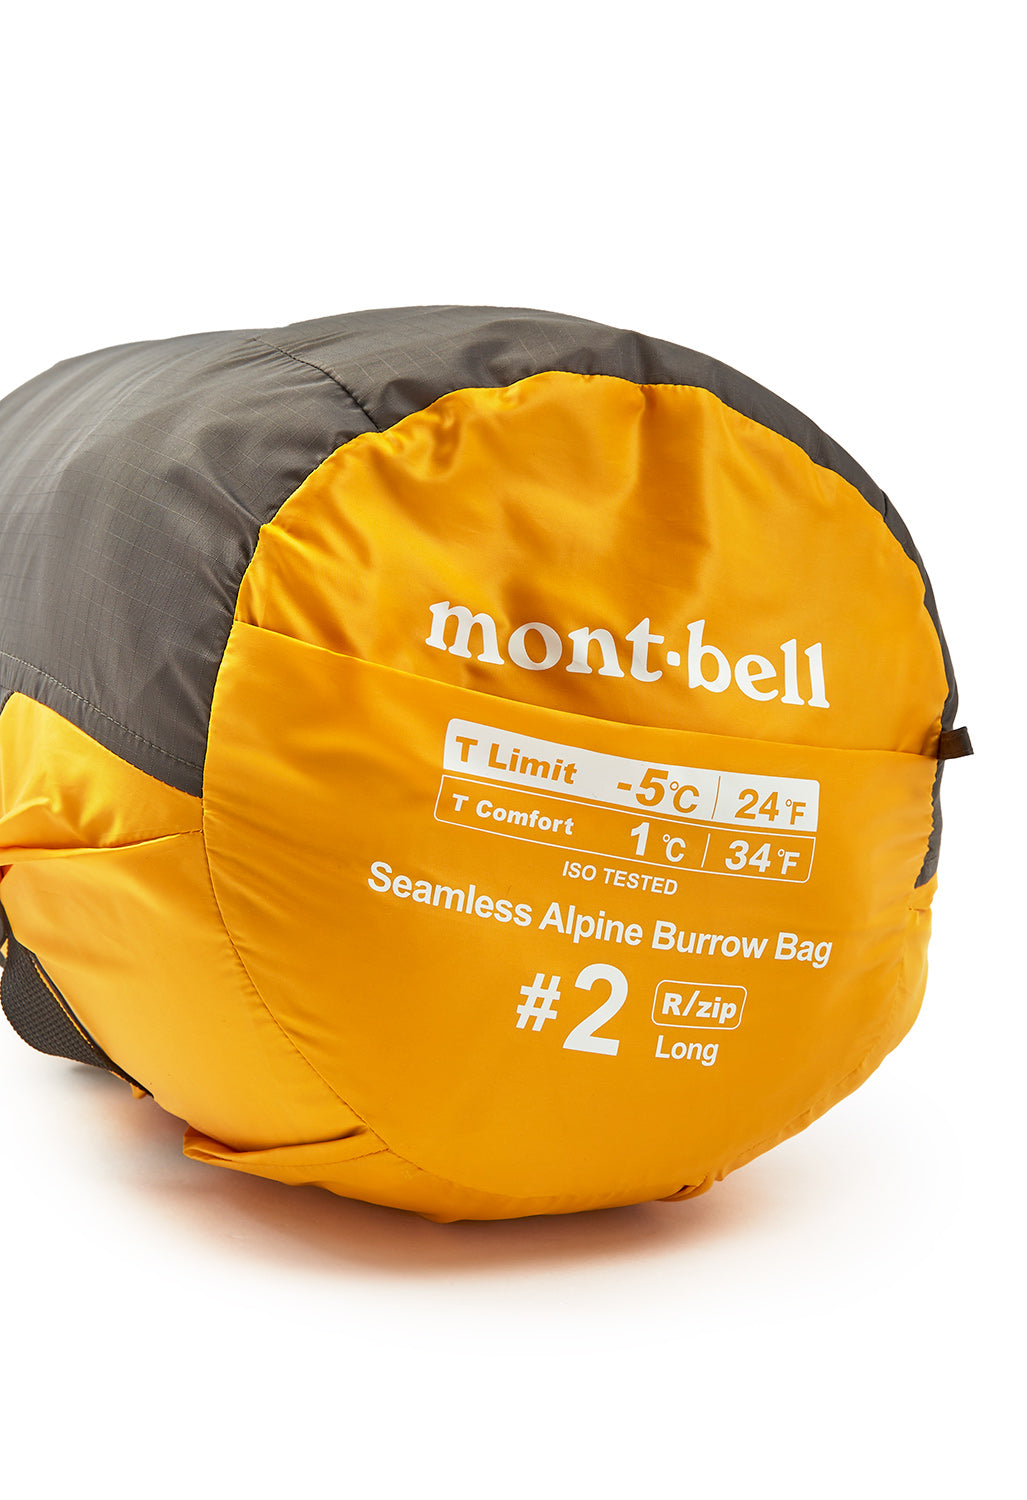 Montbell Seemless Alpine Burrow Bag #2 Long Sleeping Bag - Sunflower